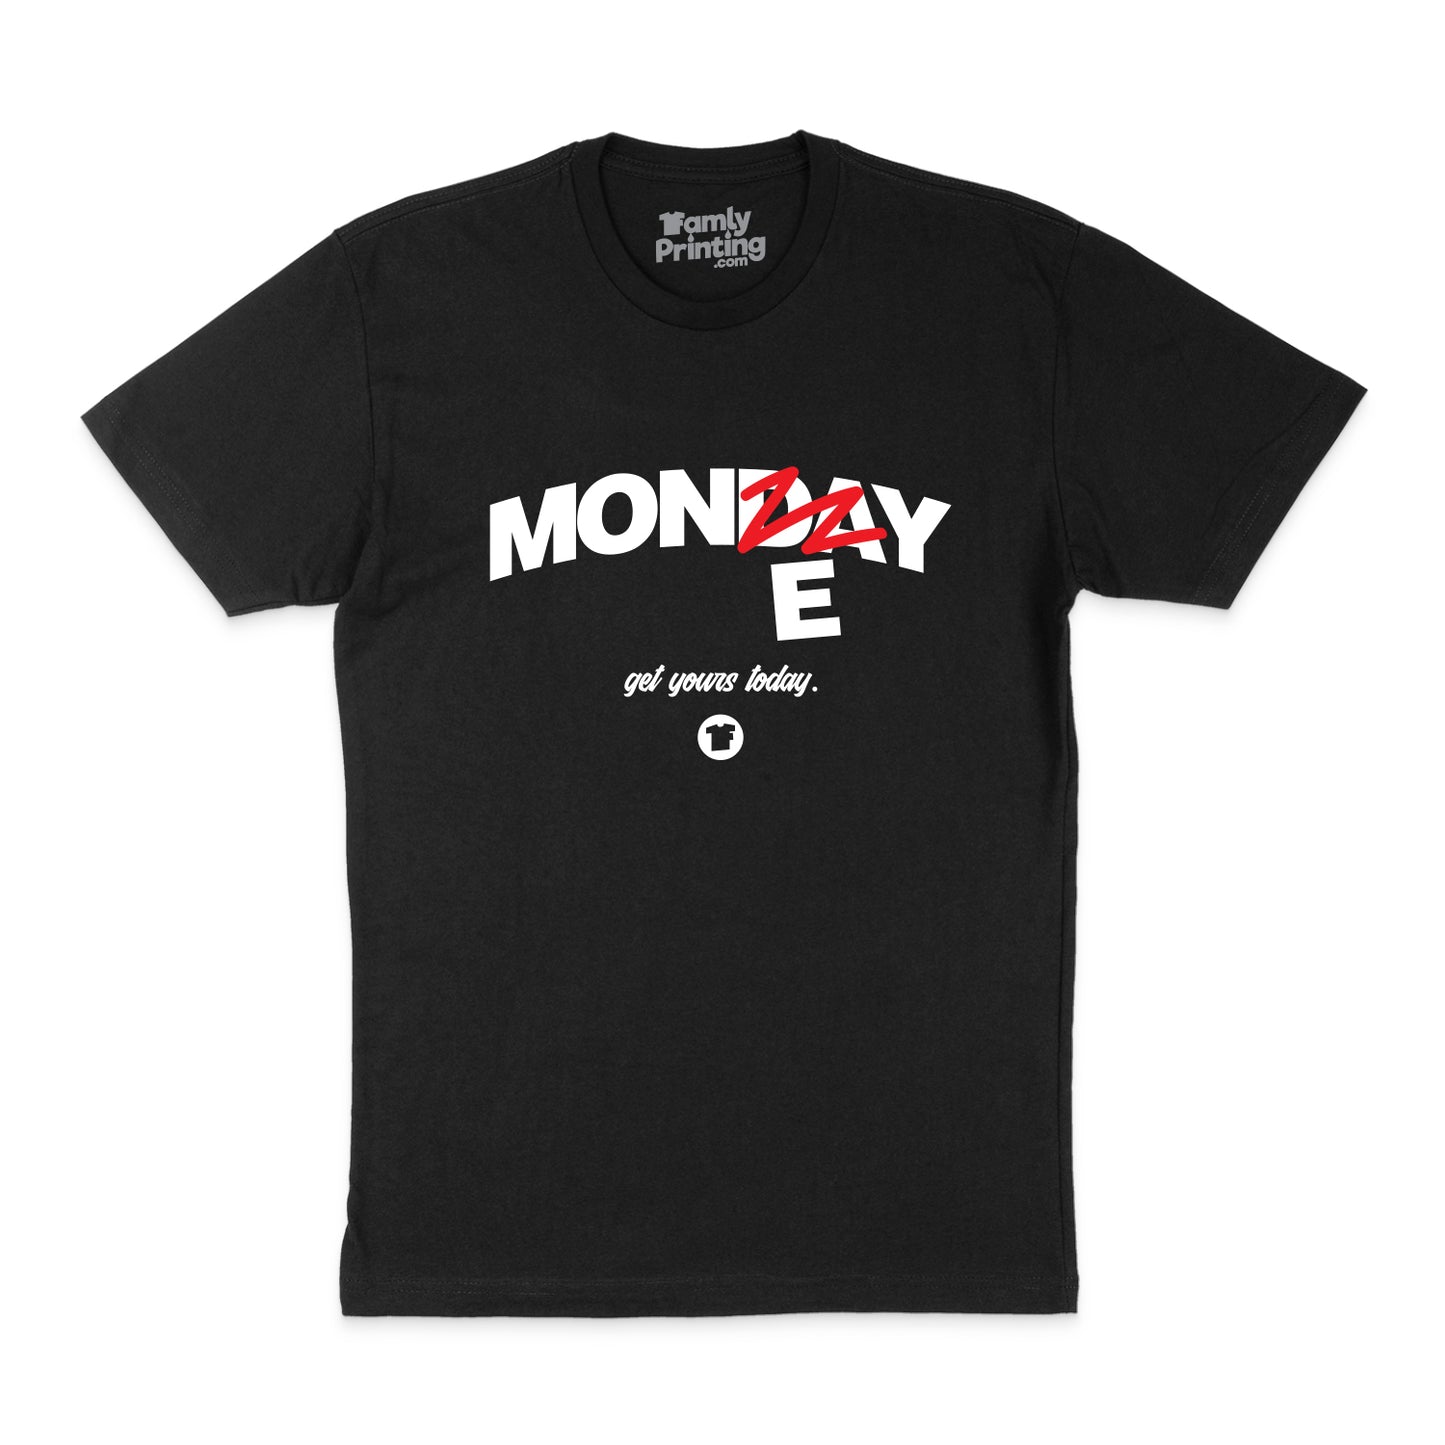 Money Monday 2